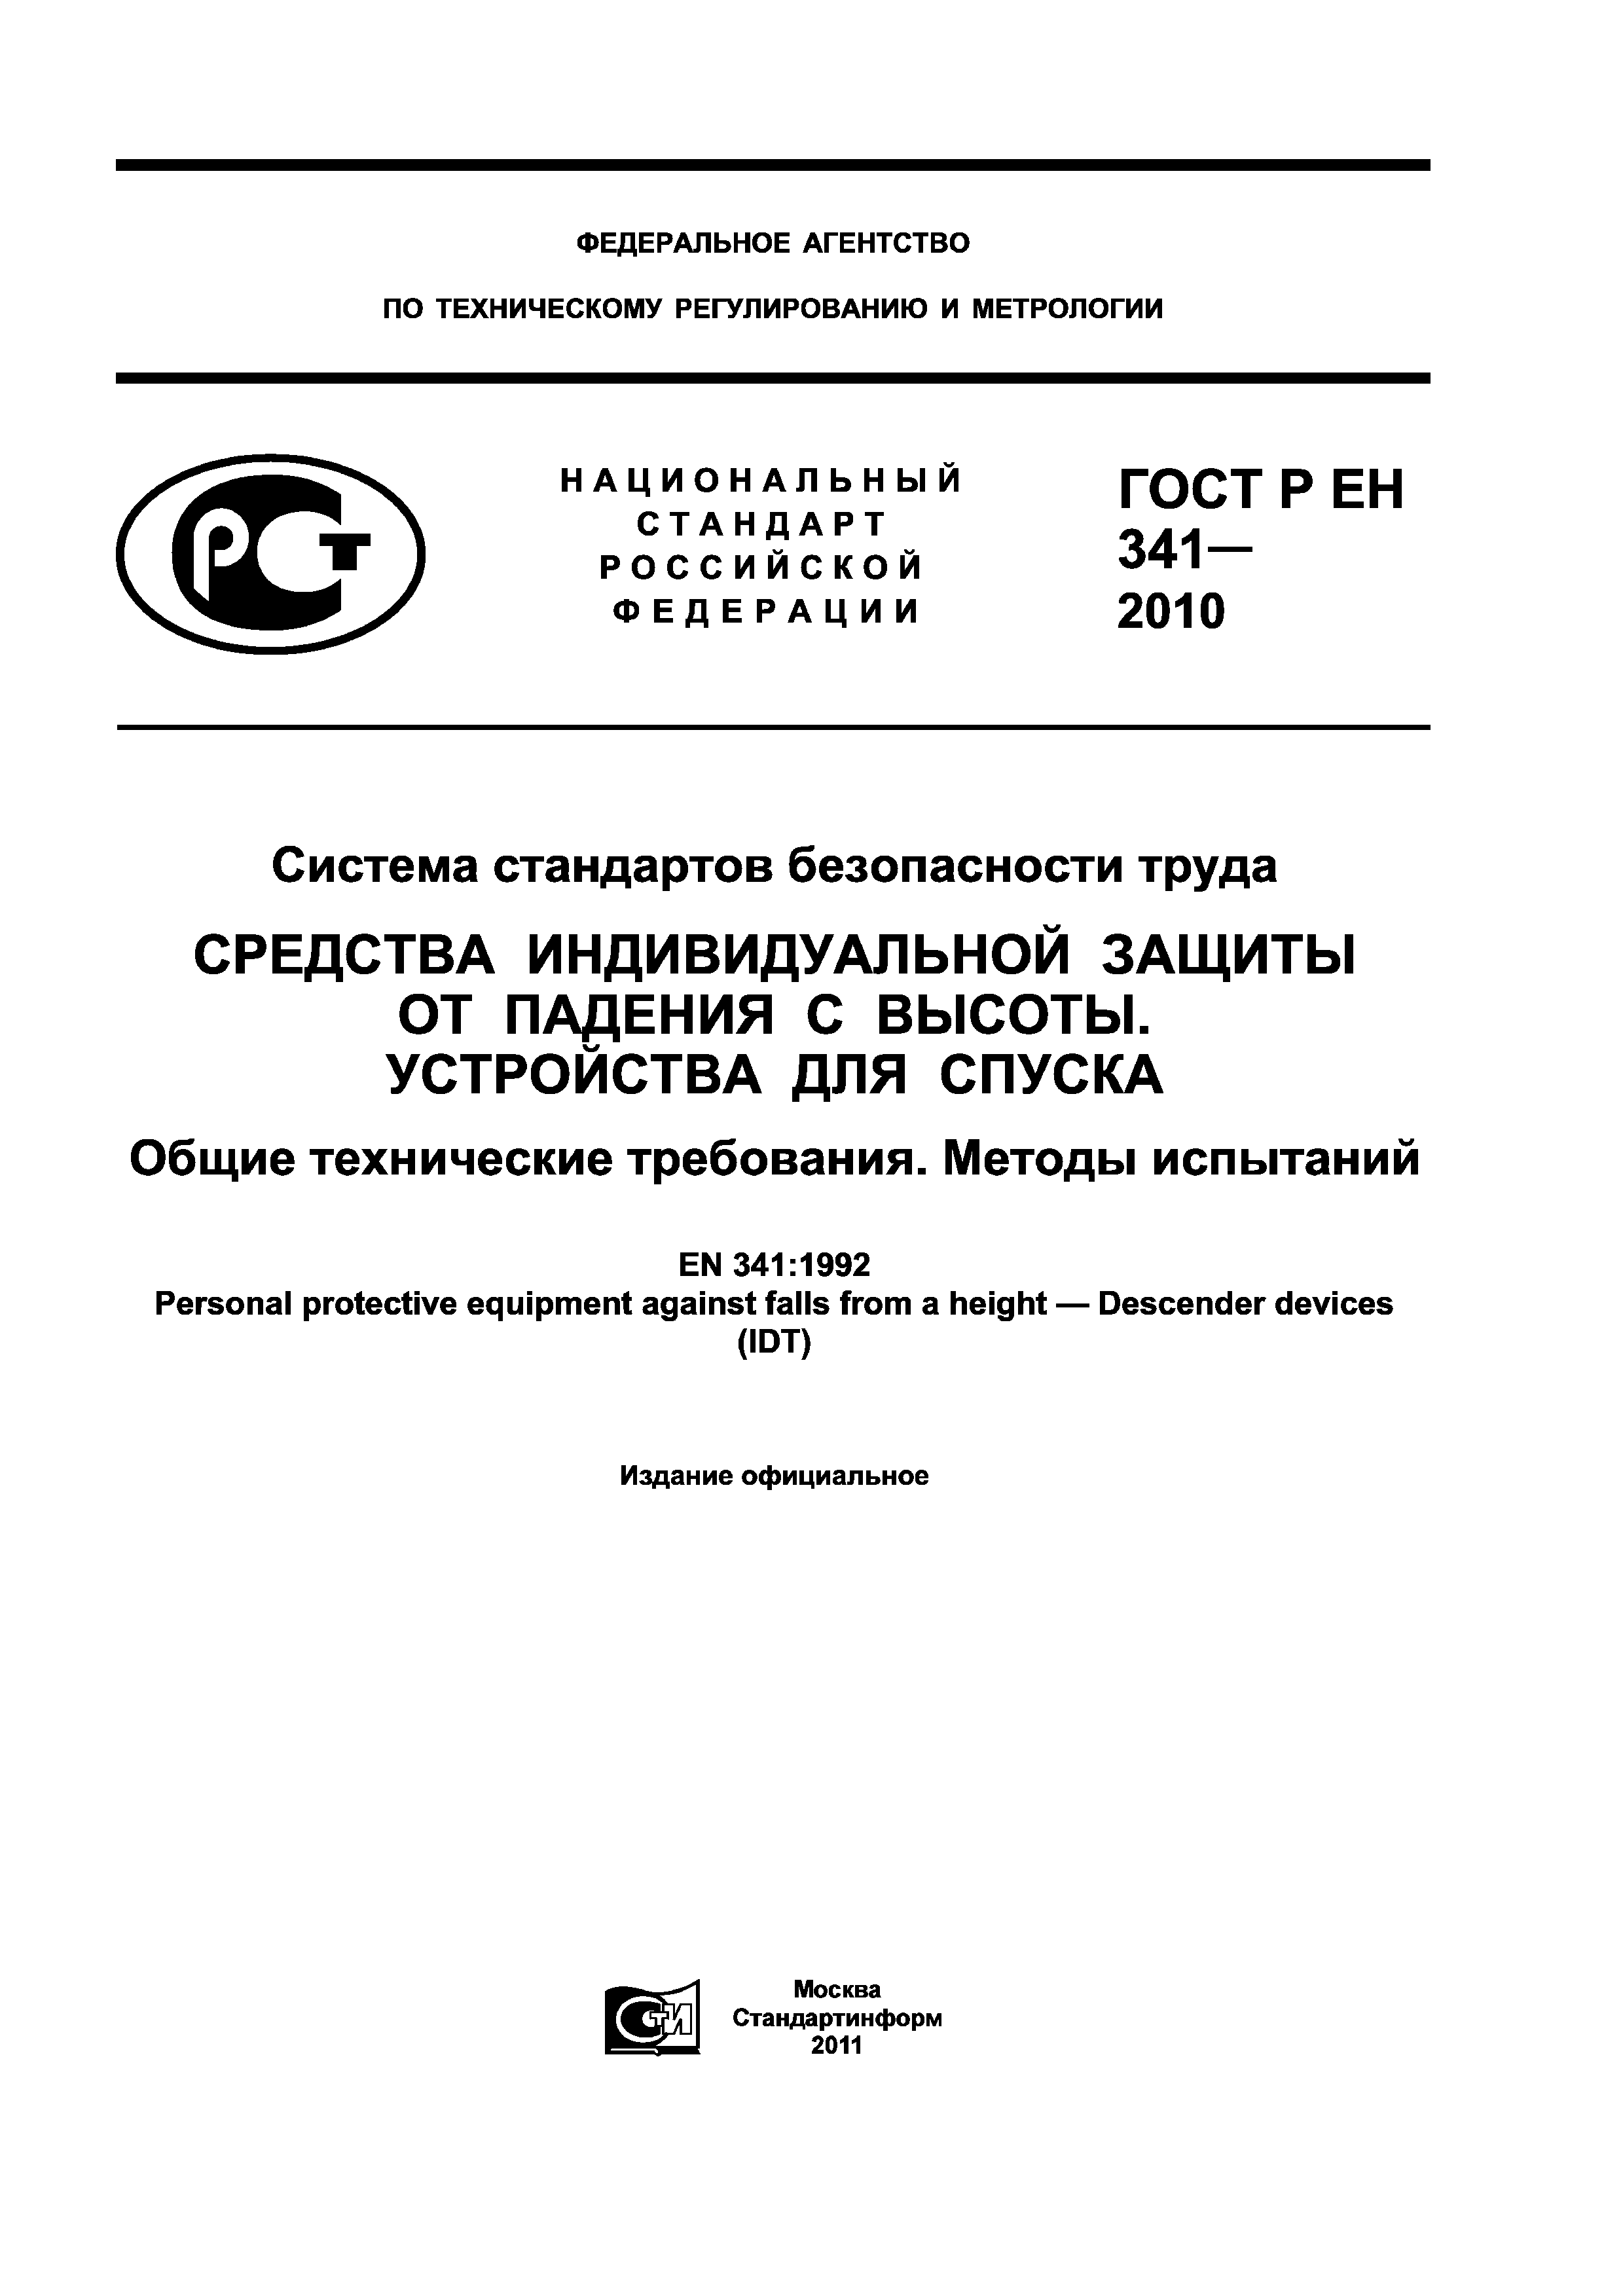 ГОСТ Р ЕН 341-2010